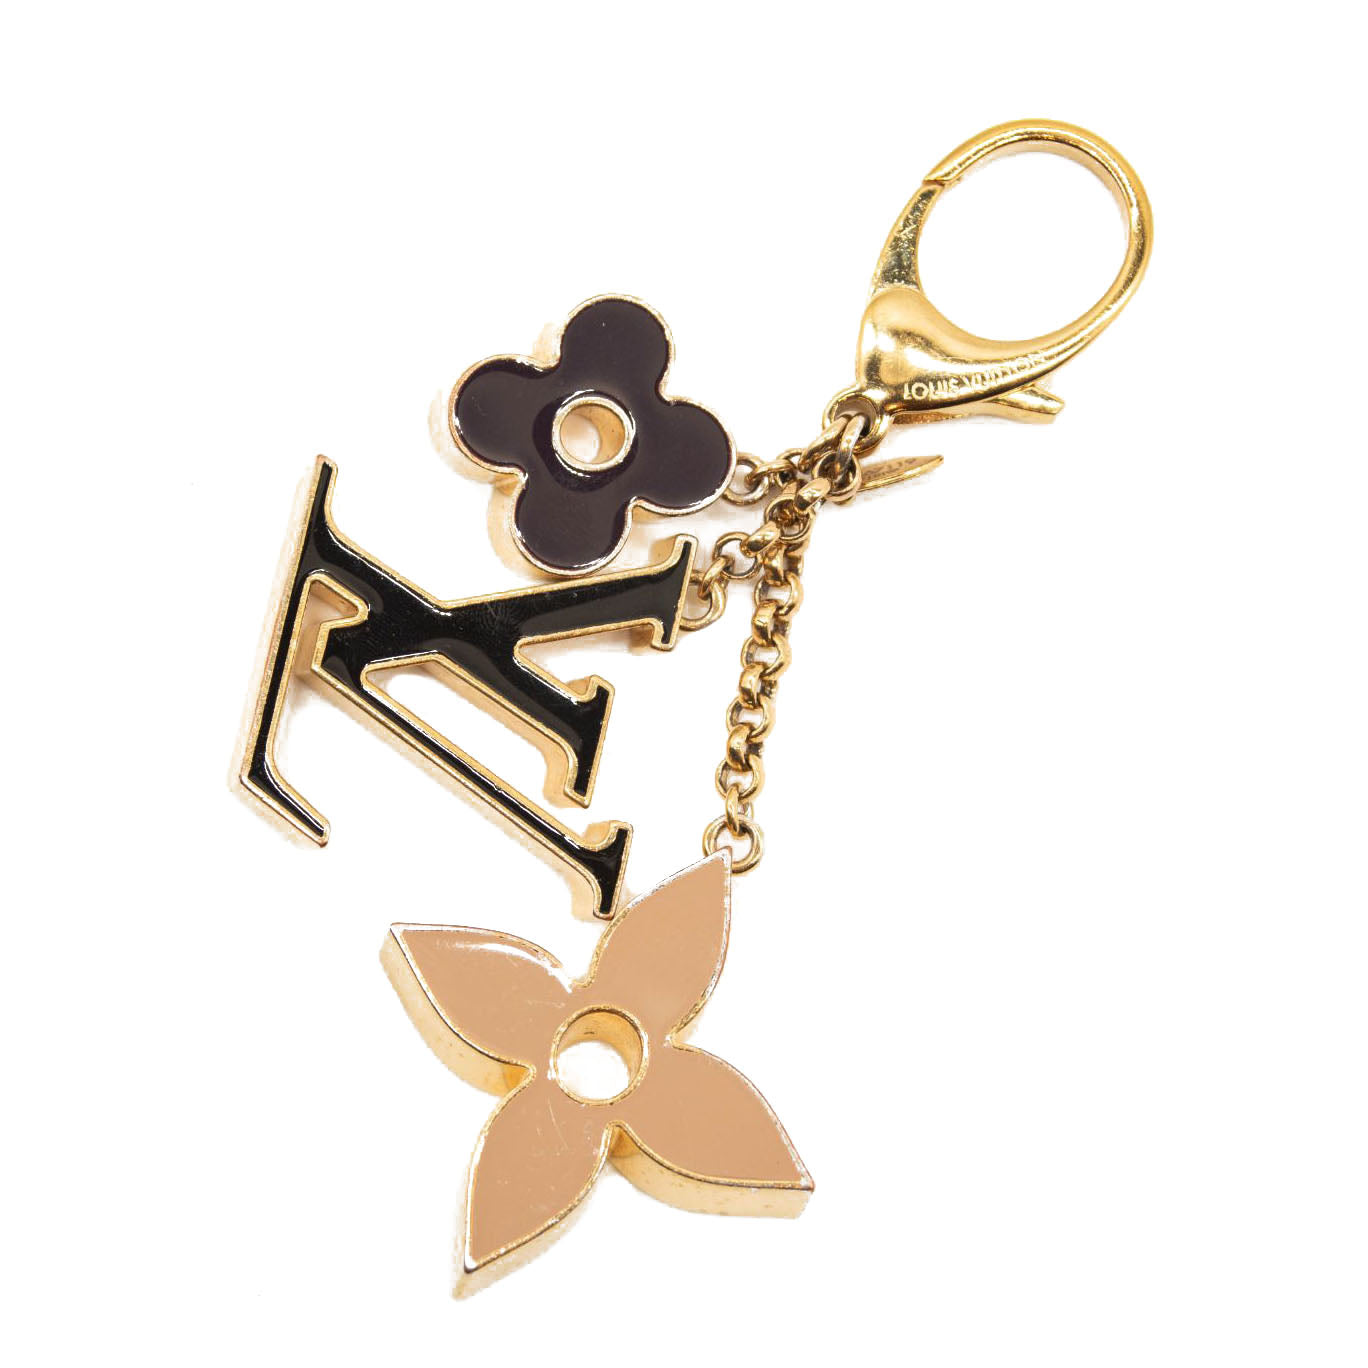 Authentic Louis Vuitton Fleur de Monogram bag charm keychain